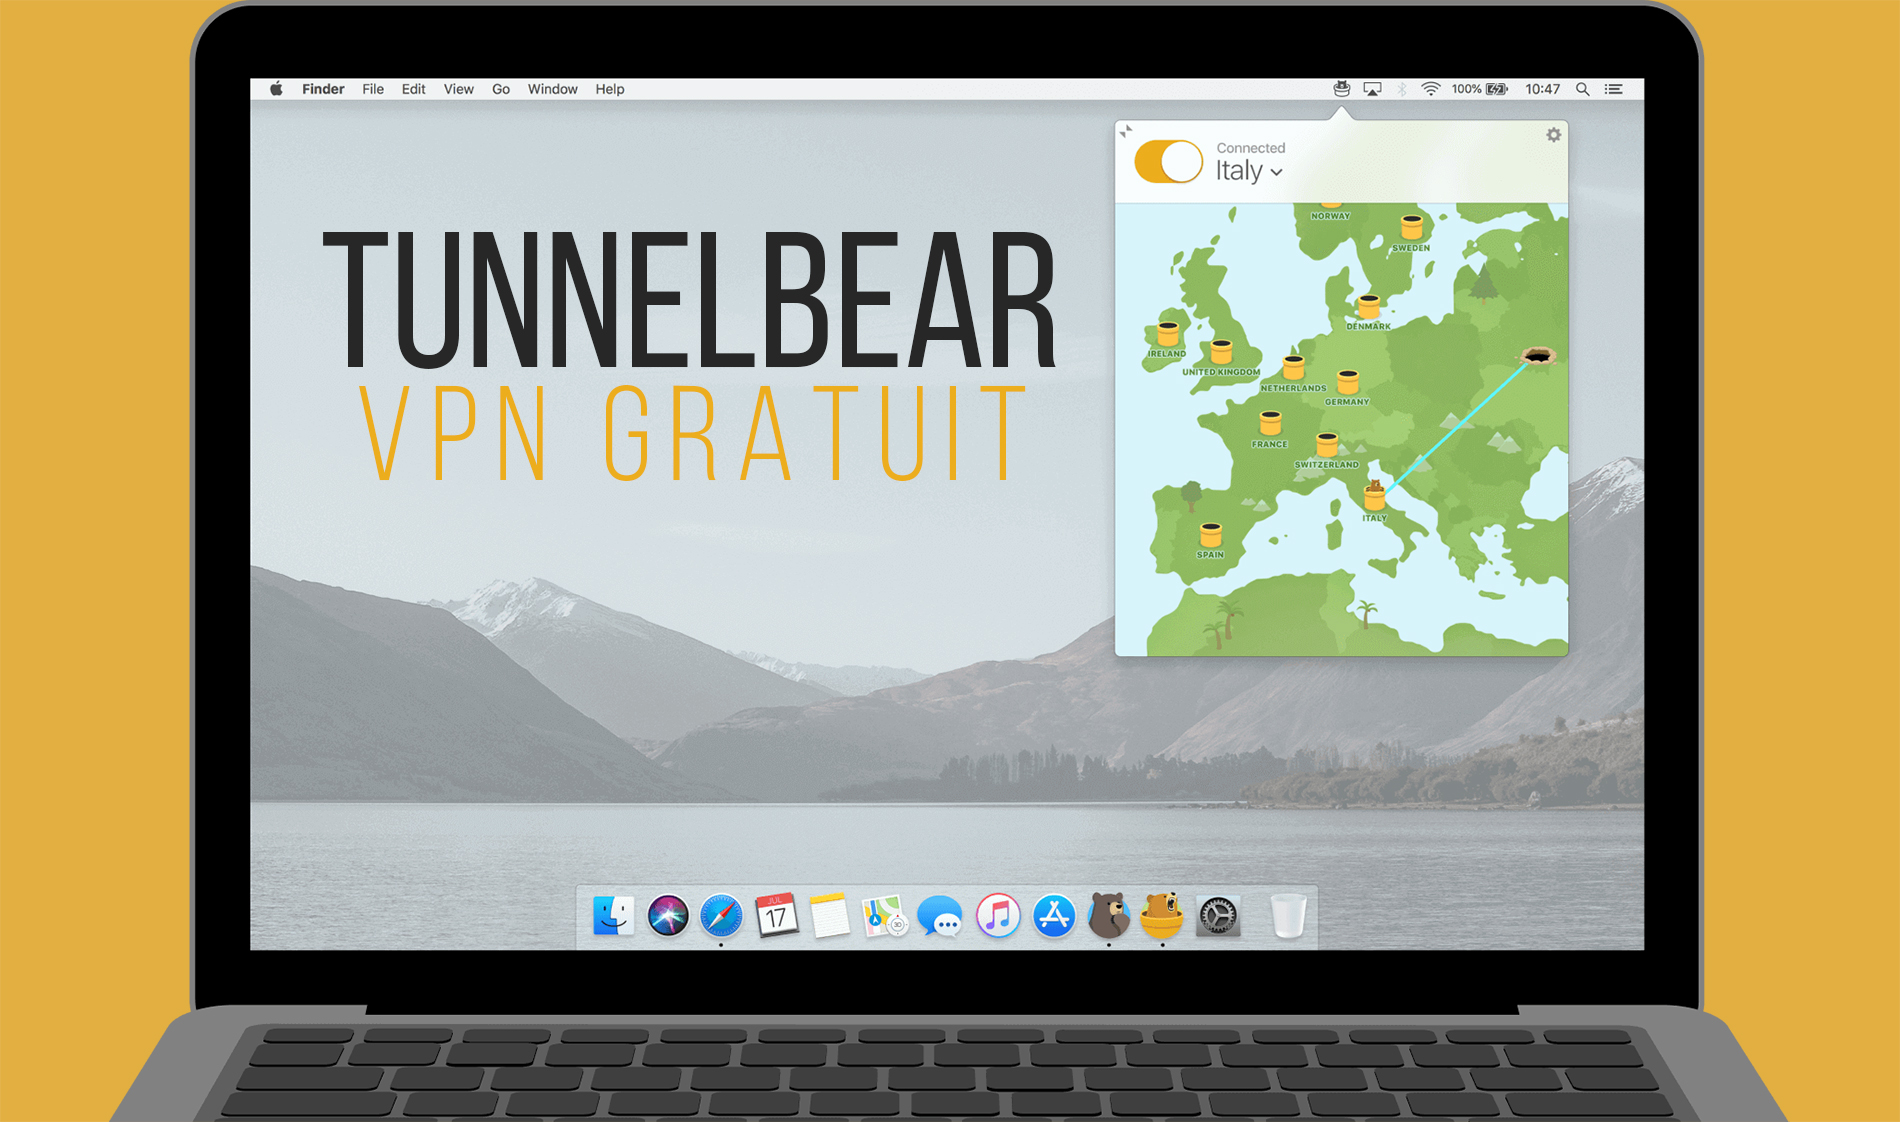 TunnelBear: He VPN koreutu me te ngawari engari he iti